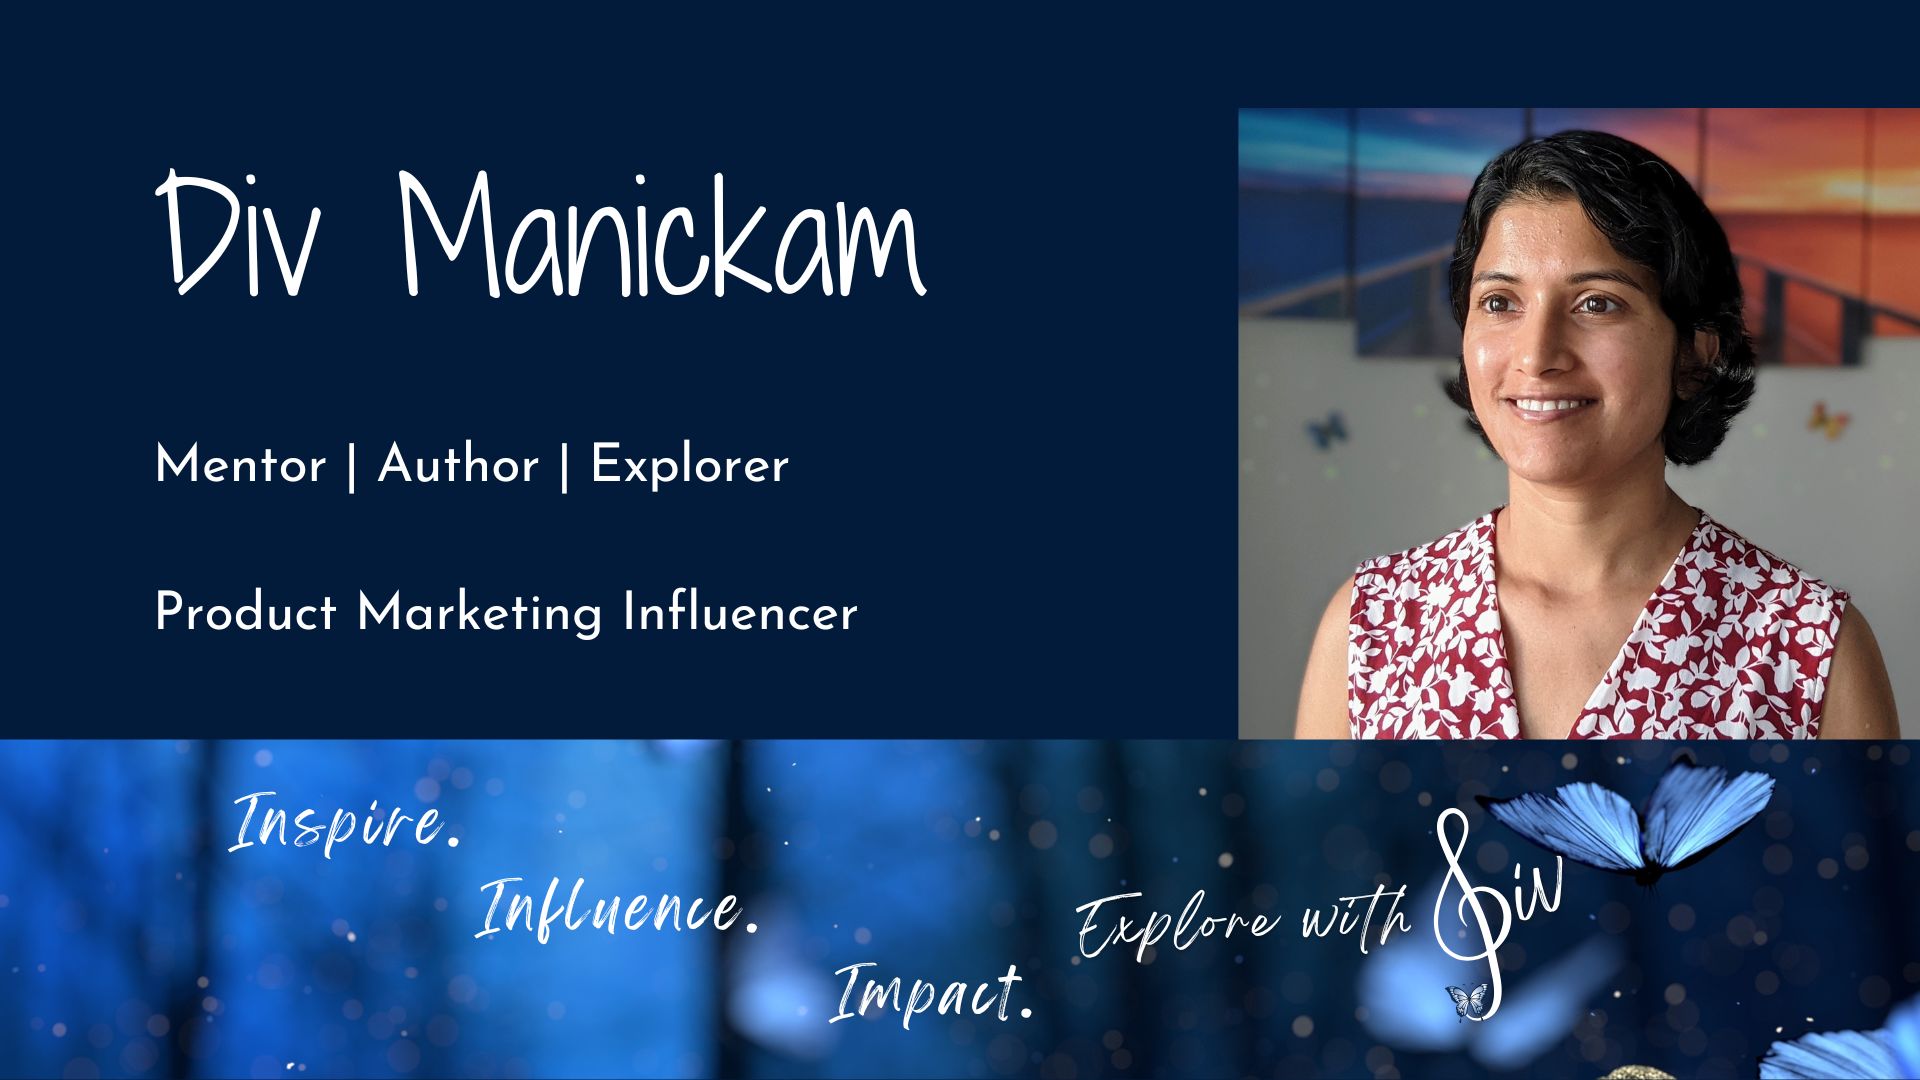 Div Manickam – Meet the Mentor